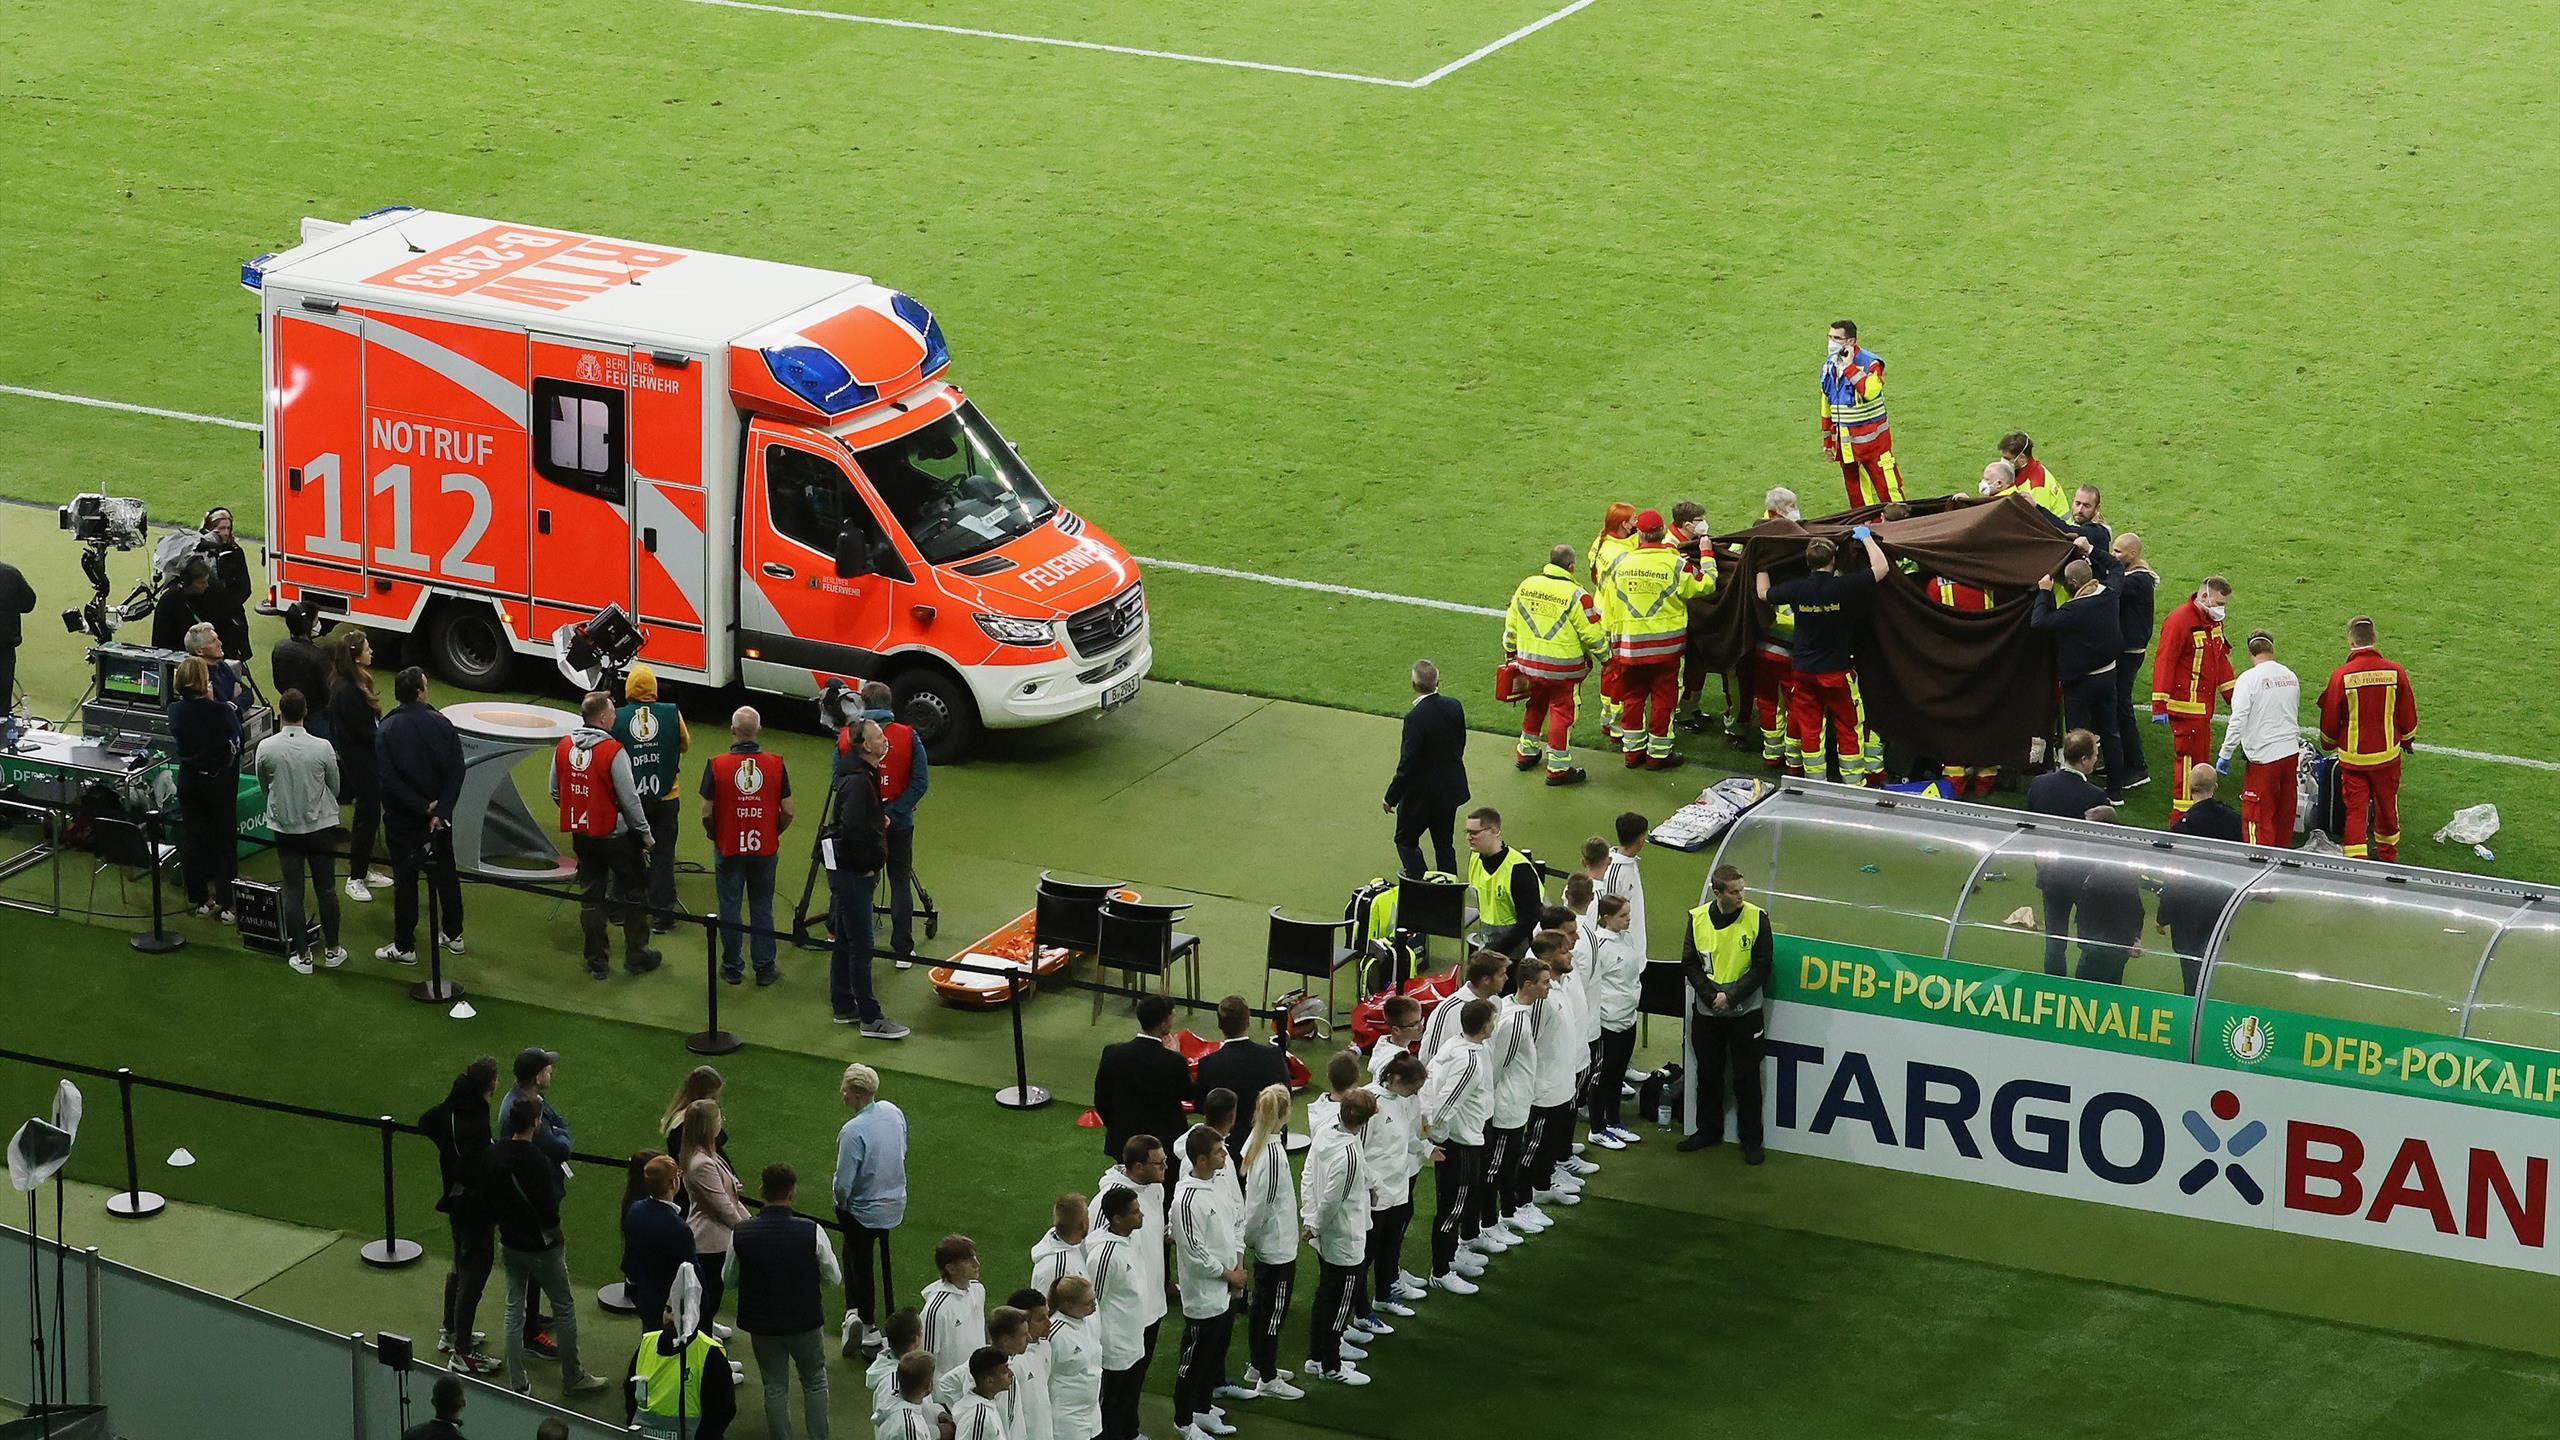 DFB-Pokalfinale Medizinischer Notfall im Innenraum des Berliner Olympiastadion überschattet Siegerehrung